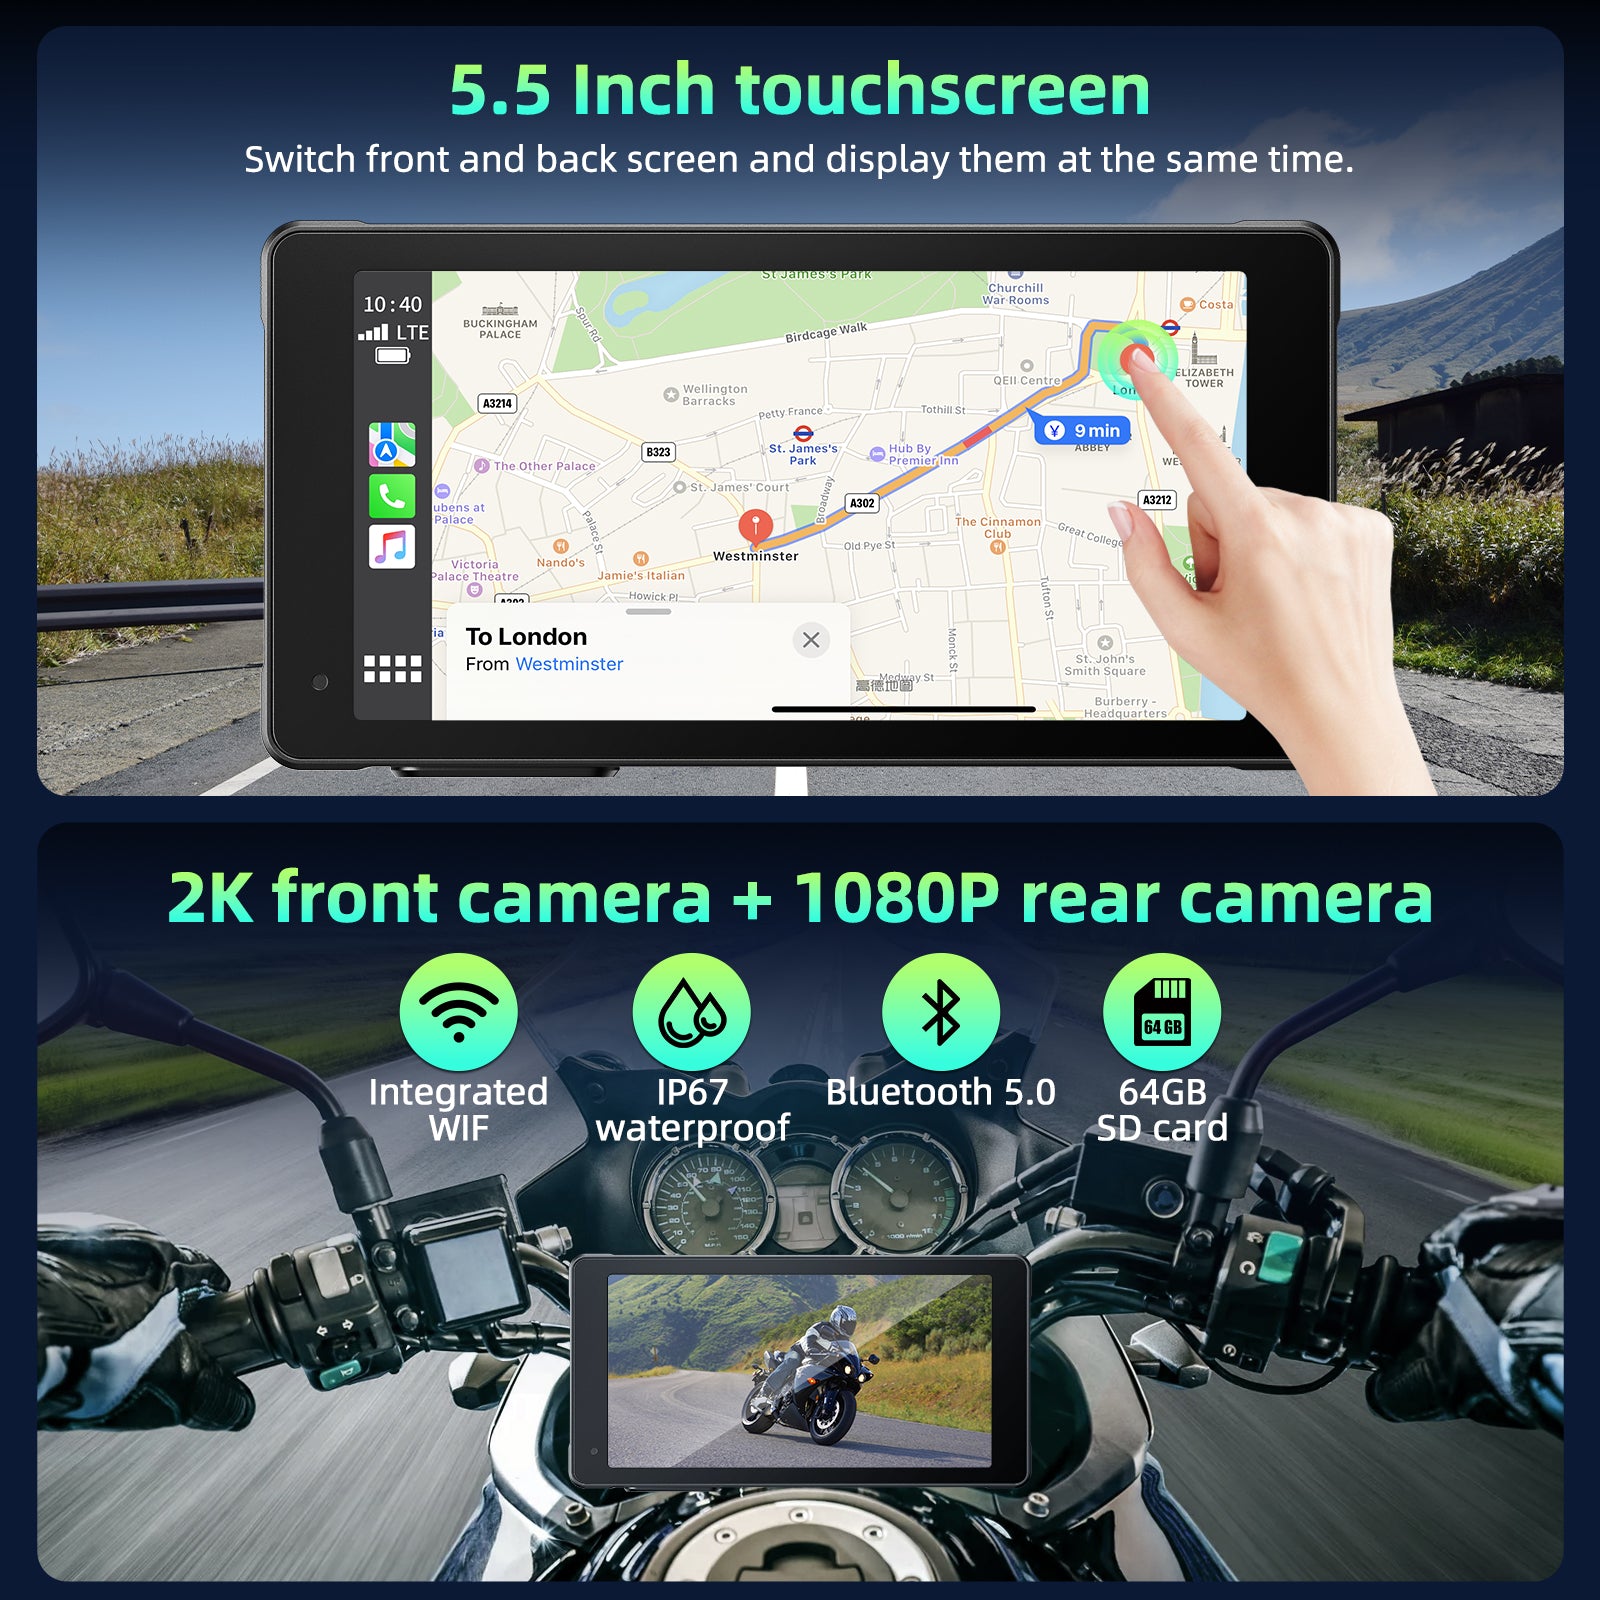 Motorcycle Car Radio 5.5" Touchscreen, Portable 2K Front & 1080P Rear Dash Cam